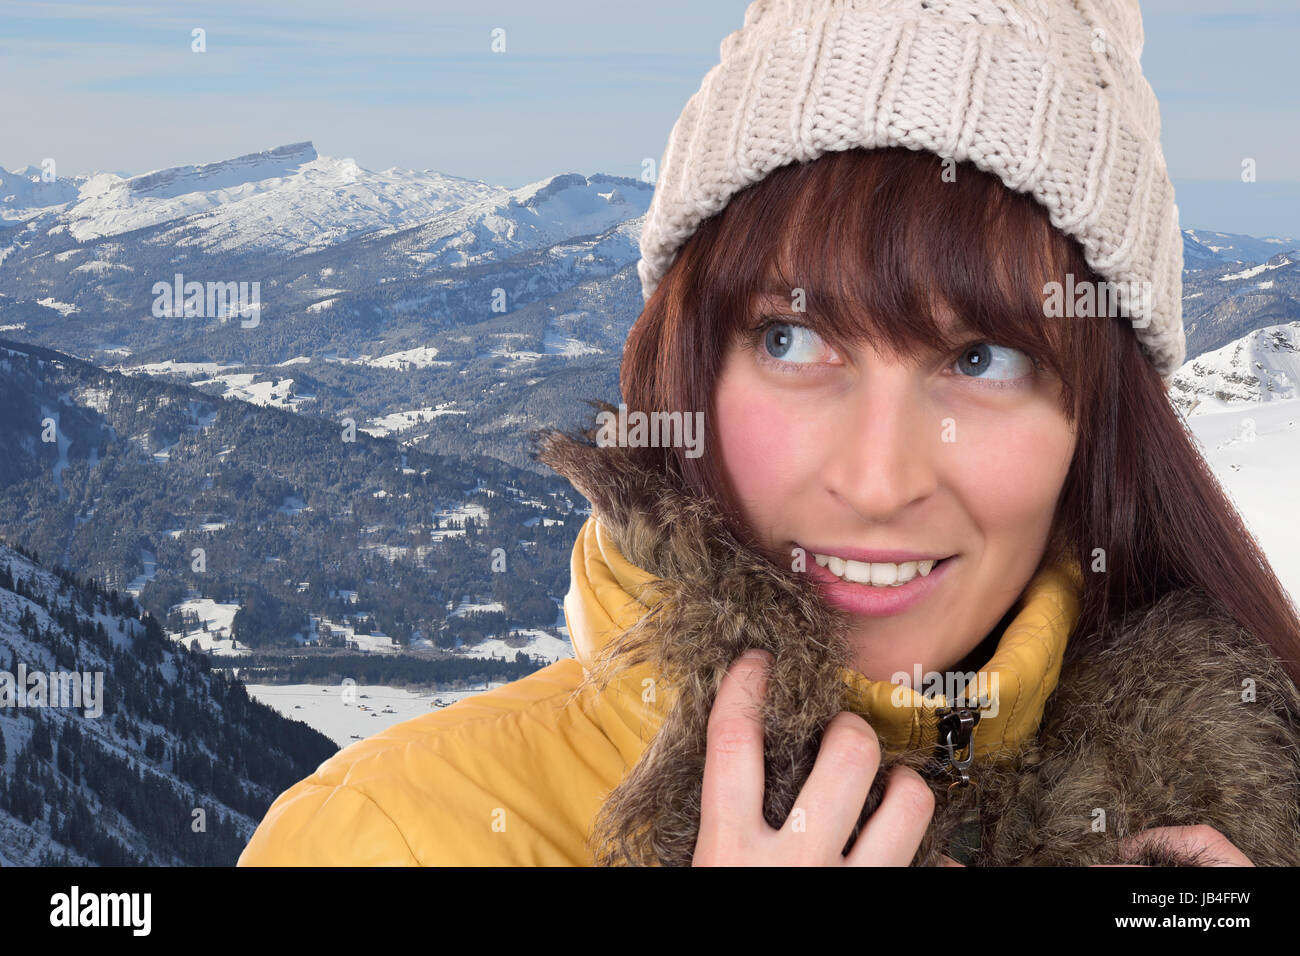 Junge Frau schaut in den Schnee bedeckten Bergen im Winter nach oben Foto Stock